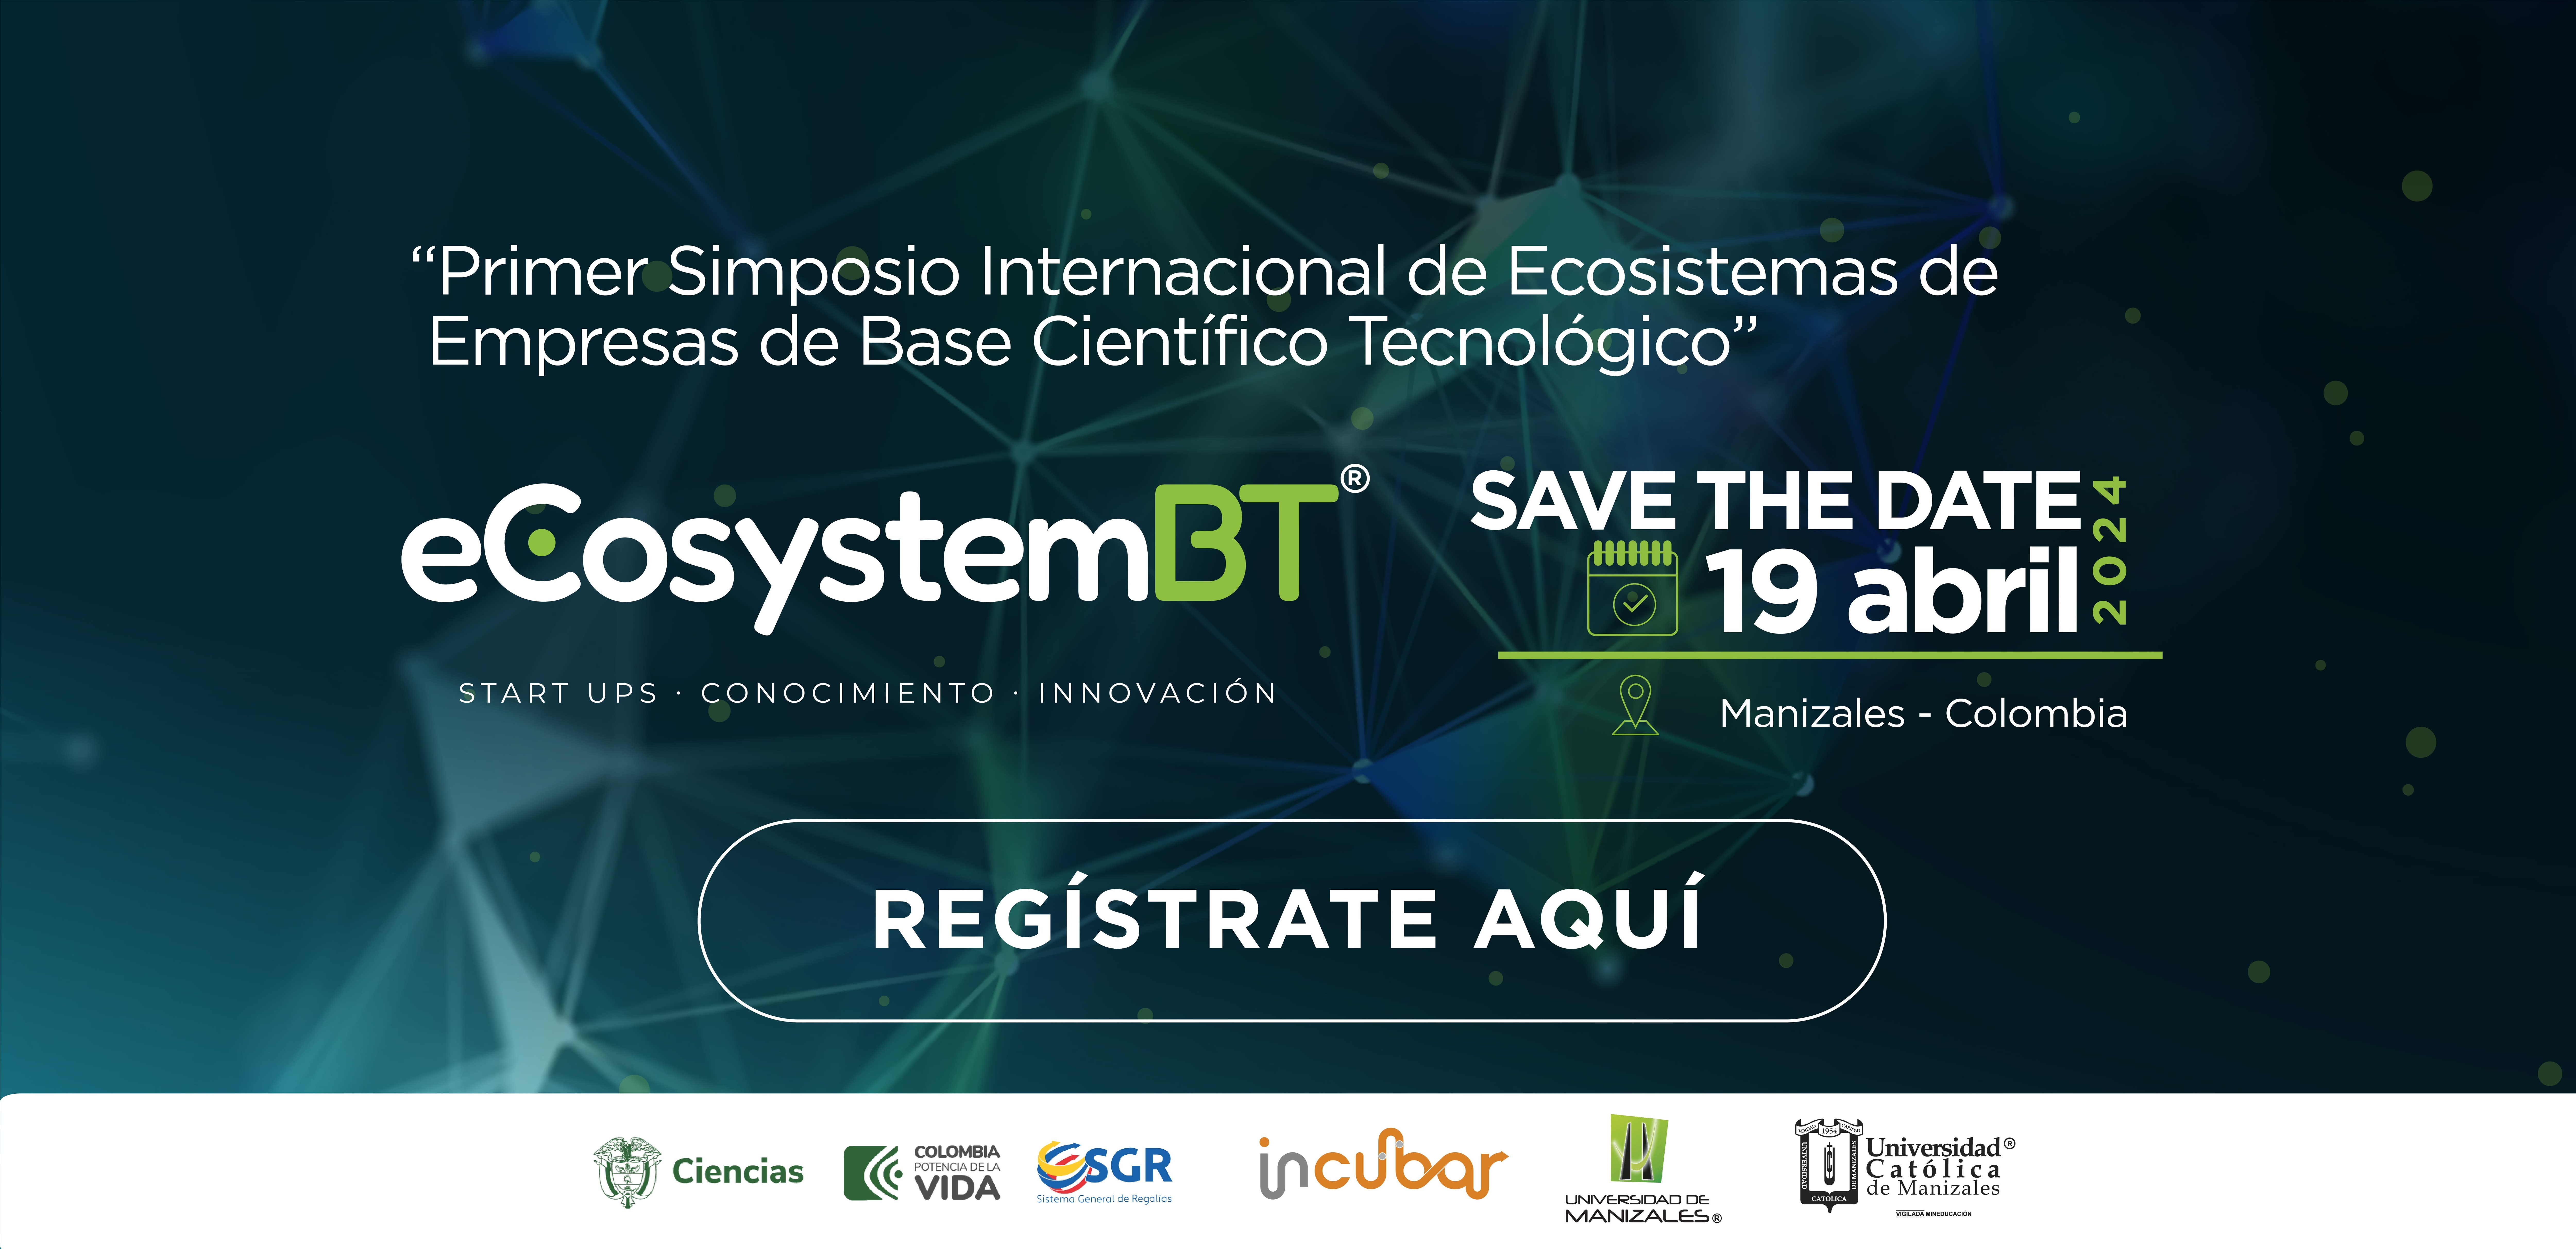 Simposio Internacional de Ecosistemas de Empresas de Base Científico Tecnológico